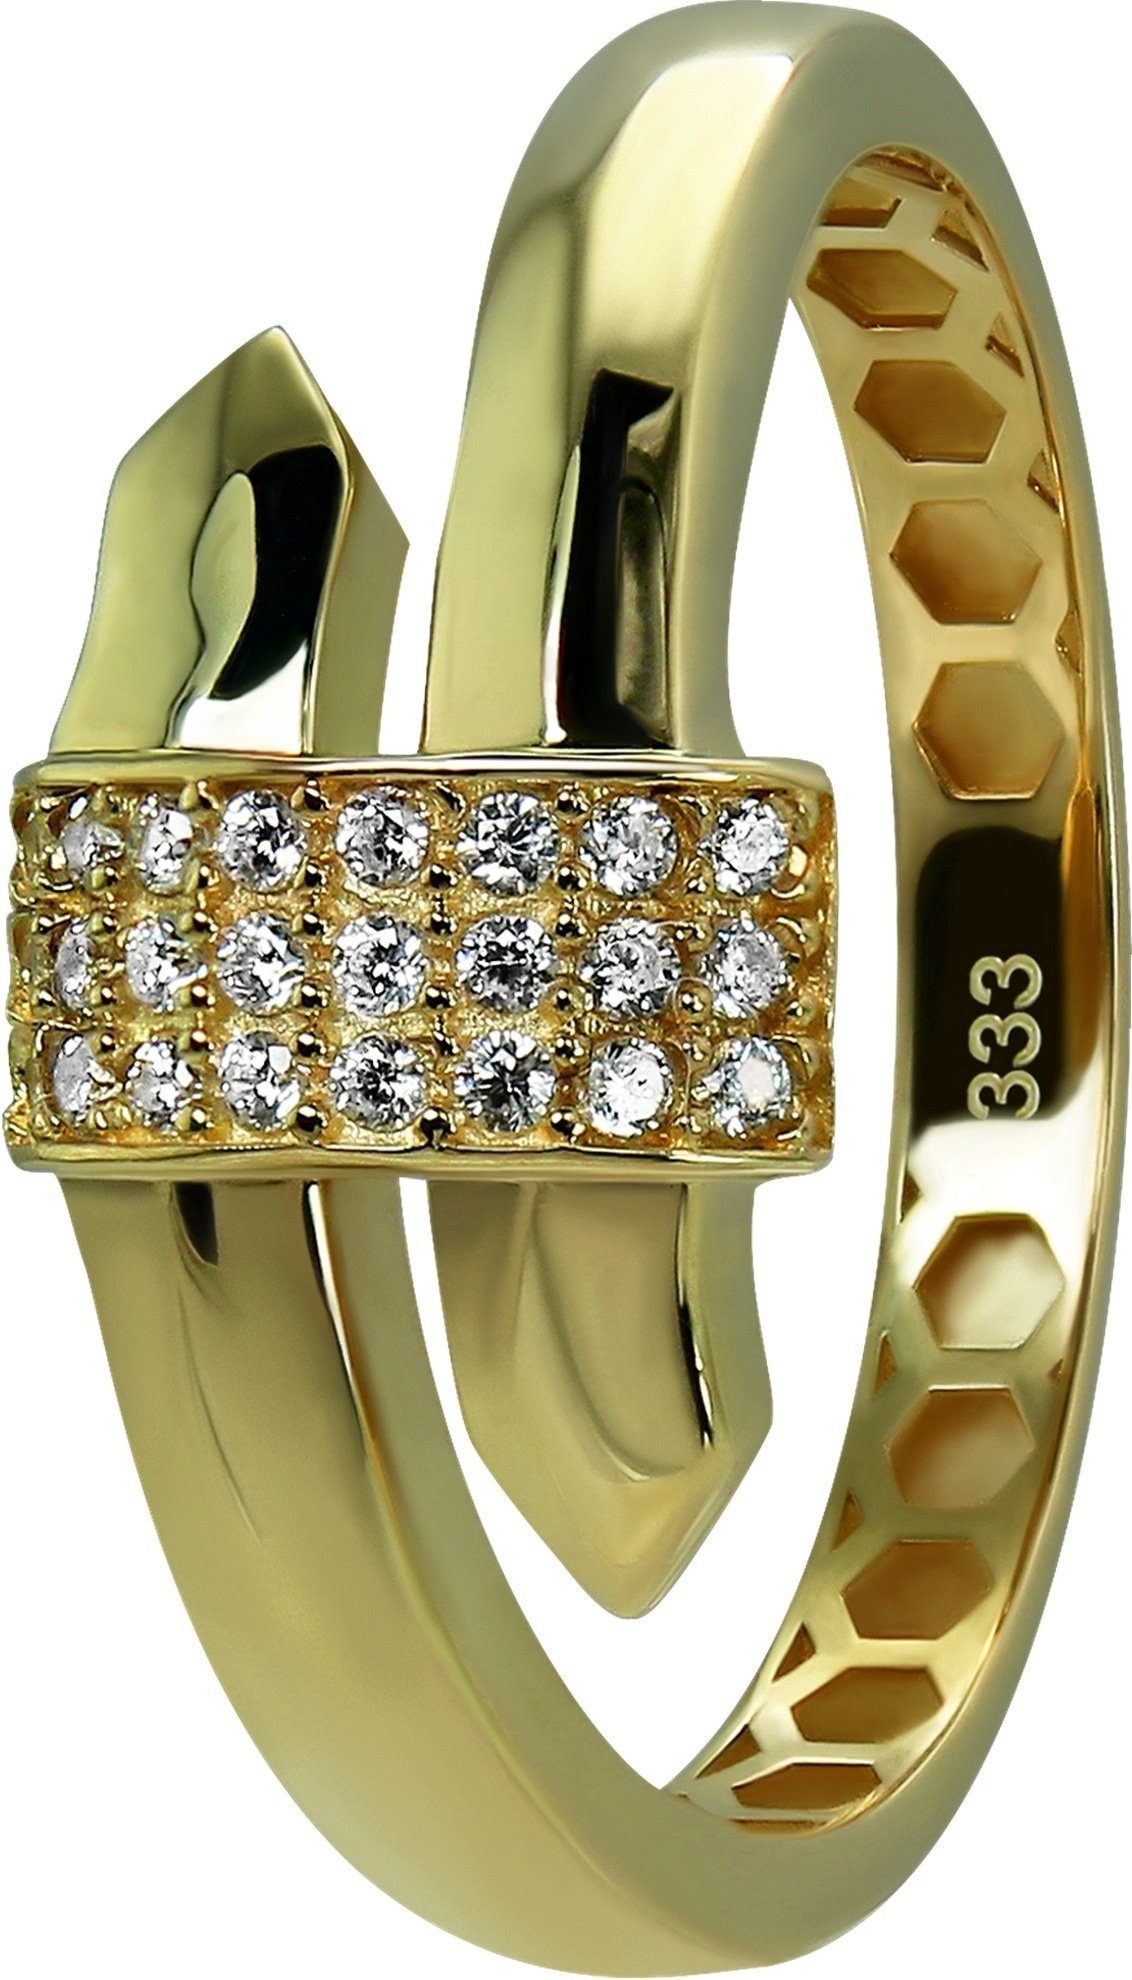 GoldDream Goldring GoldDream Gold Ring Glamour Gr.60 (Fingerring), Damen Ring Glamour 333 Gelbgold - 8 Karat, Farbe: gold, weiß